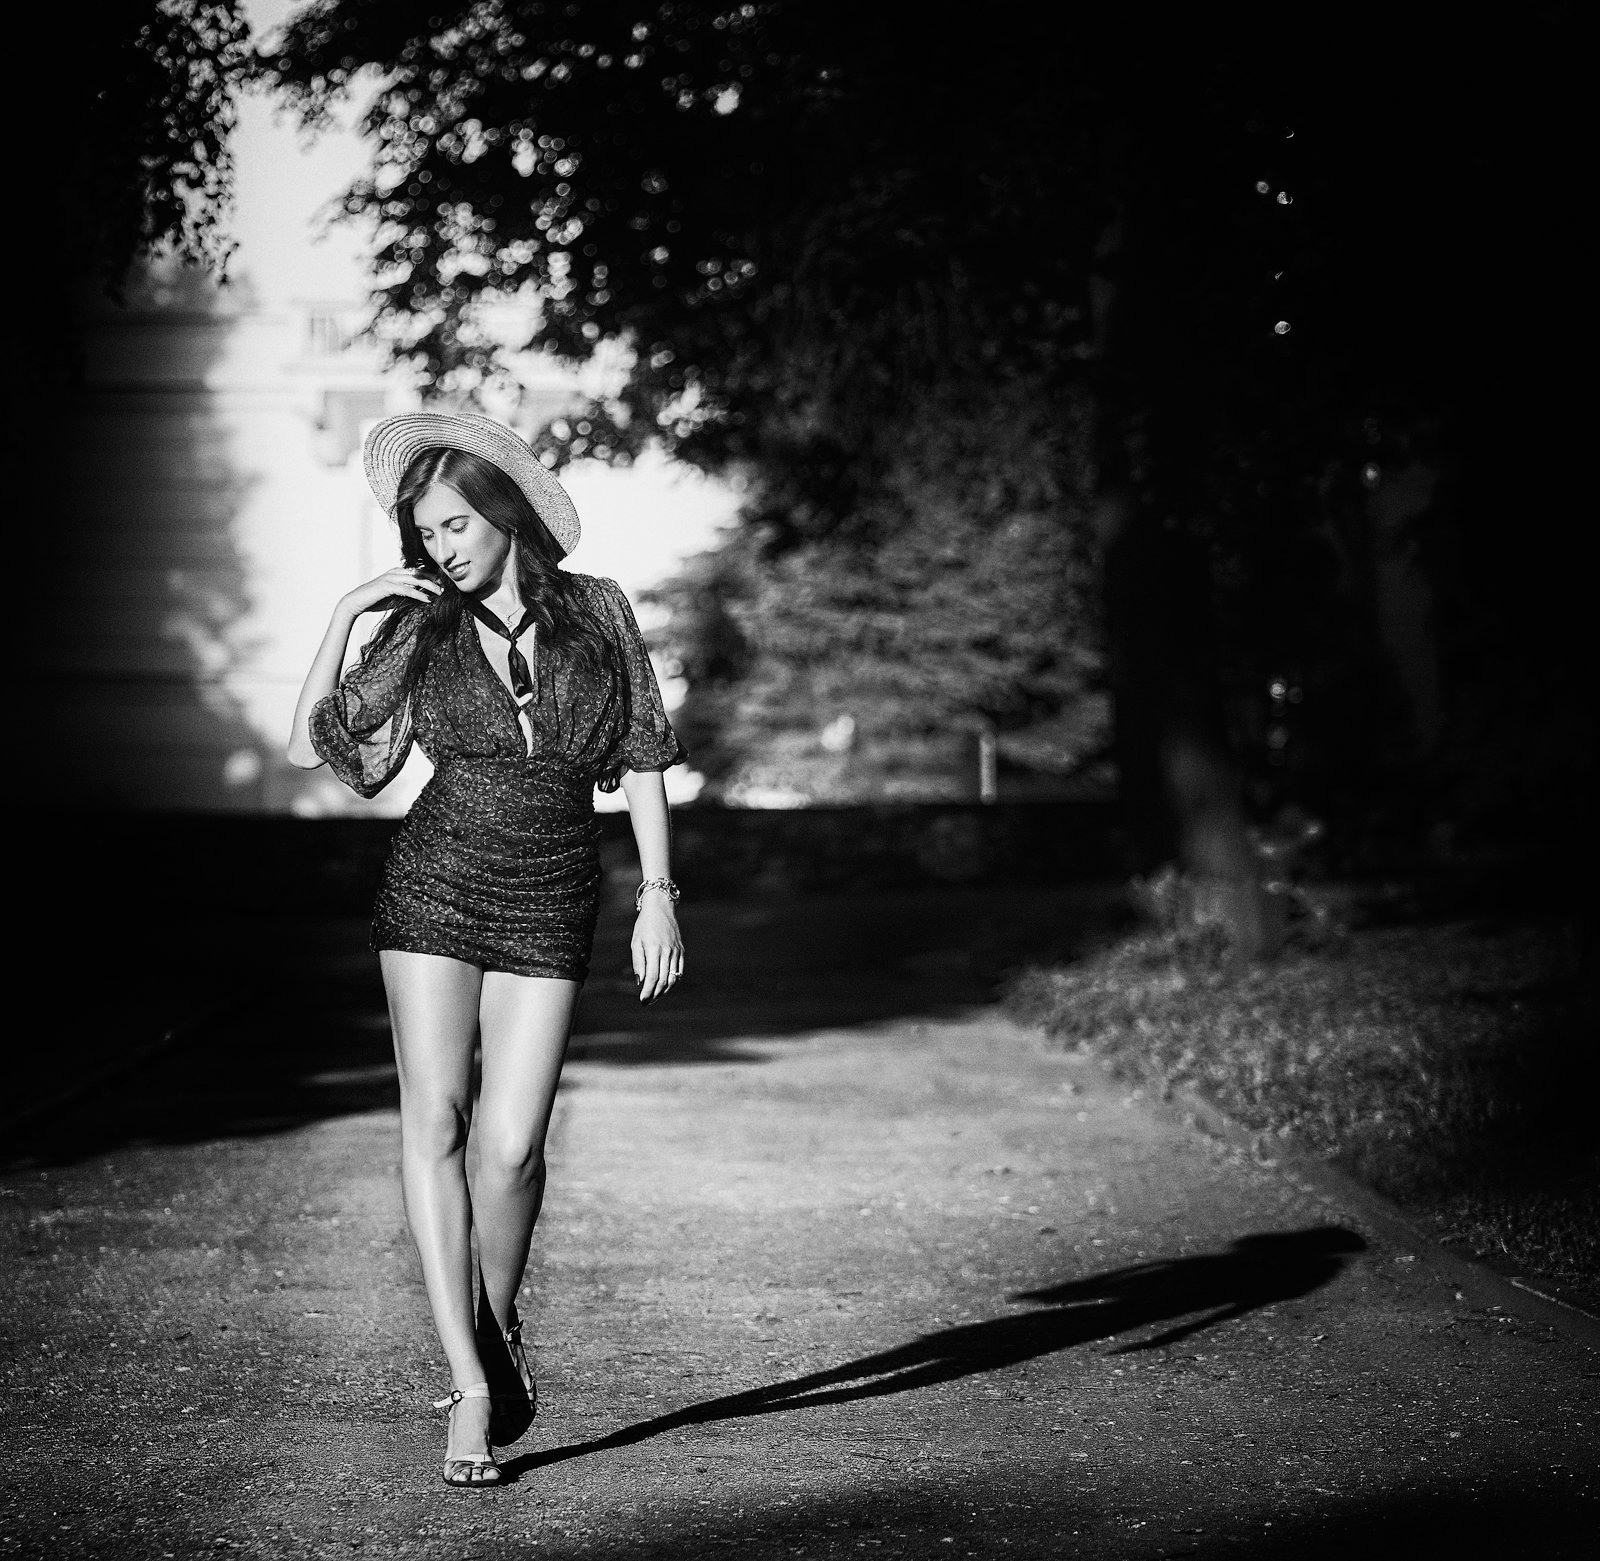 портрет,солнце,лето,прогулка,девушка,улица,чб фото,черно-белое,, Андрей Воронин